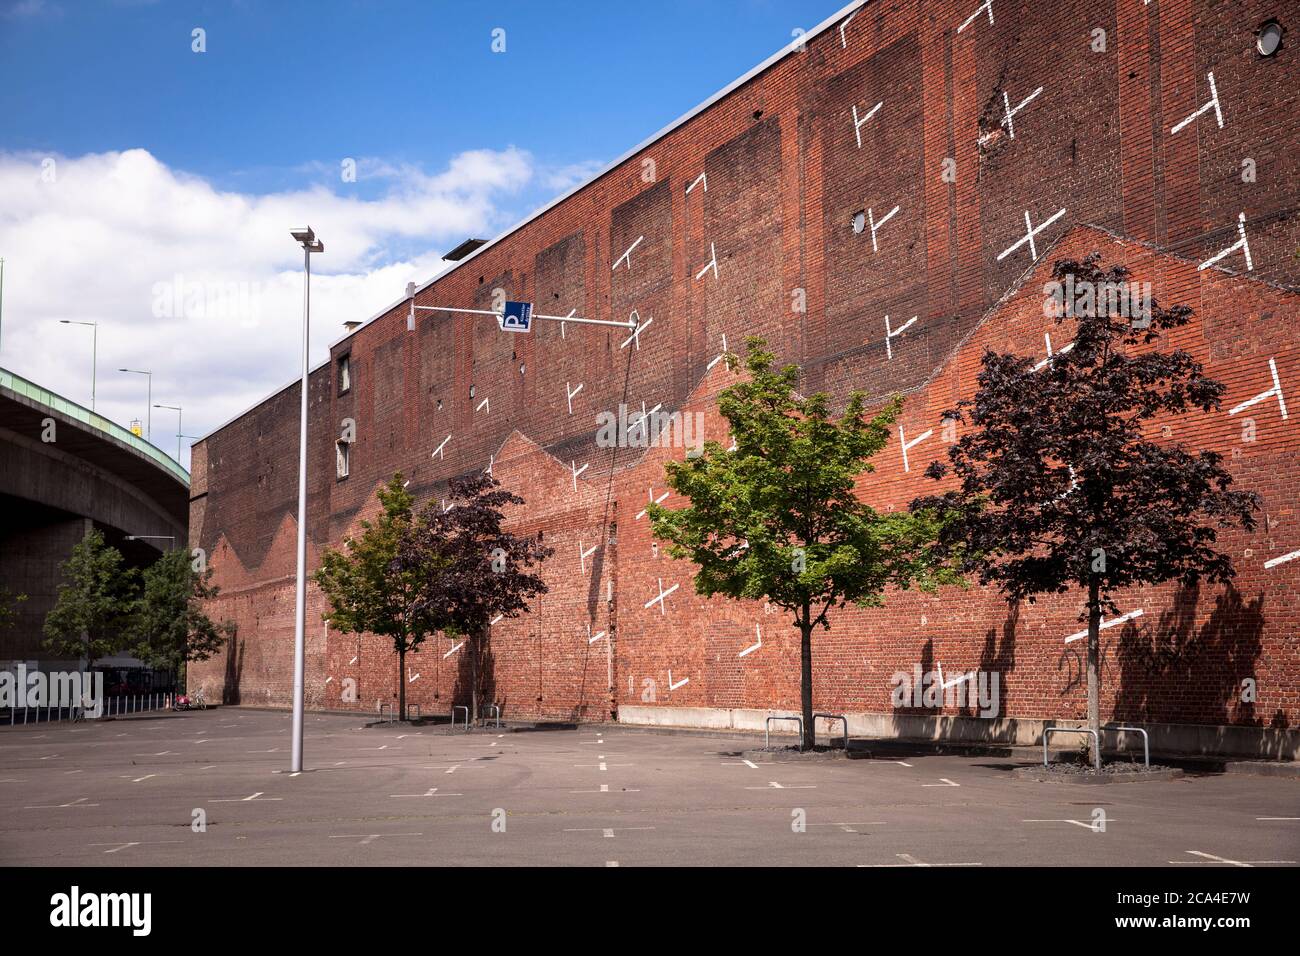 Parcheggio verticale dipinto del progetto architettonico di Colonia su un muro di mattoni vicino alla fiera di Deutz, Colonia, Germania. Aufgemalter vertikal Foto Stock